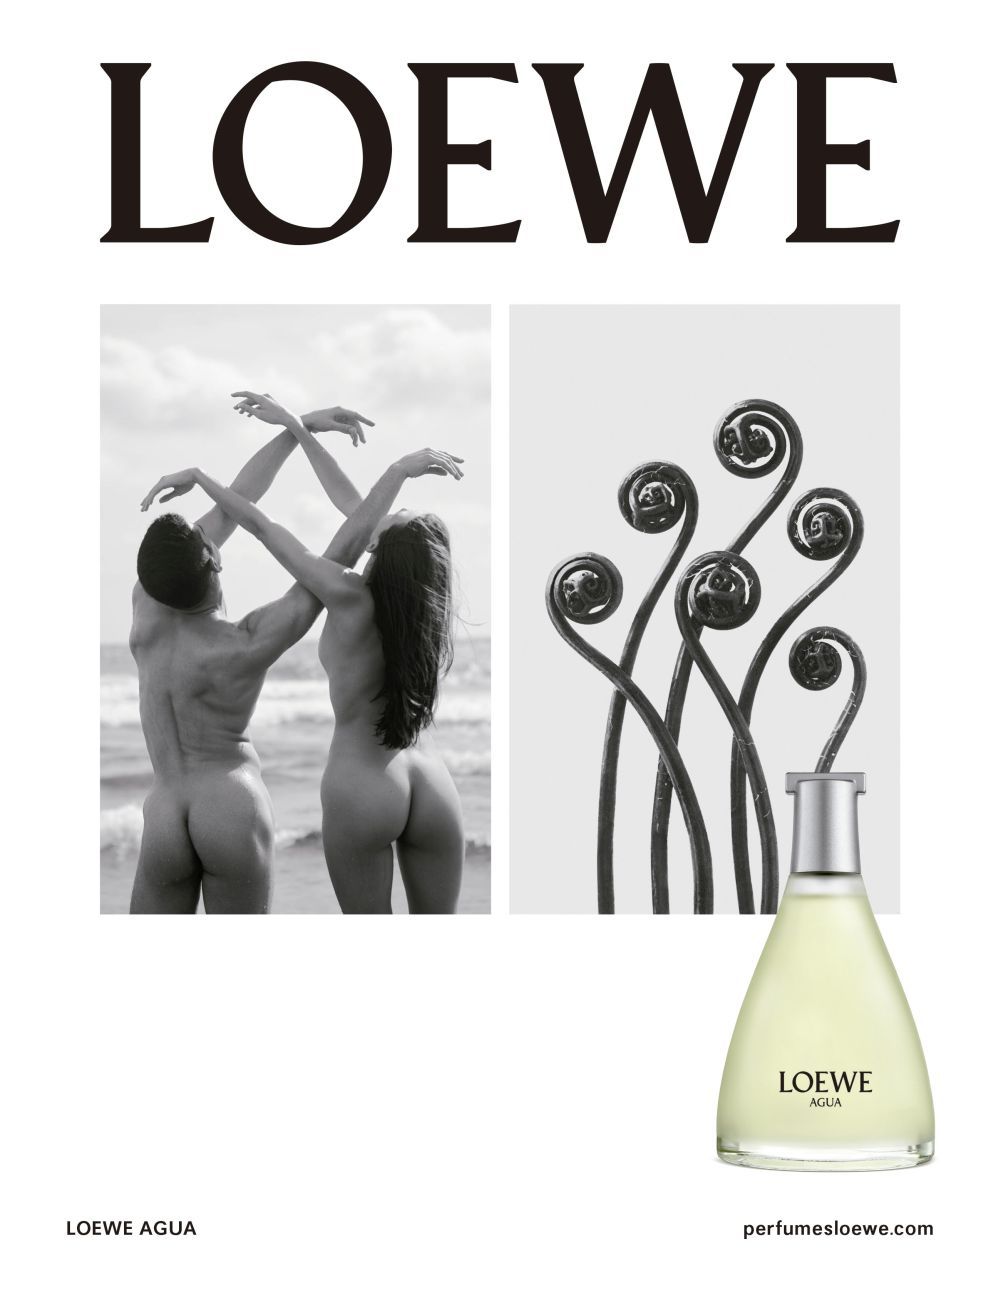 Publicidad de Loewe en la que el fotgrafo Arno Minkkinen homenajea a Blossfeldt y da vida a sus plantas.